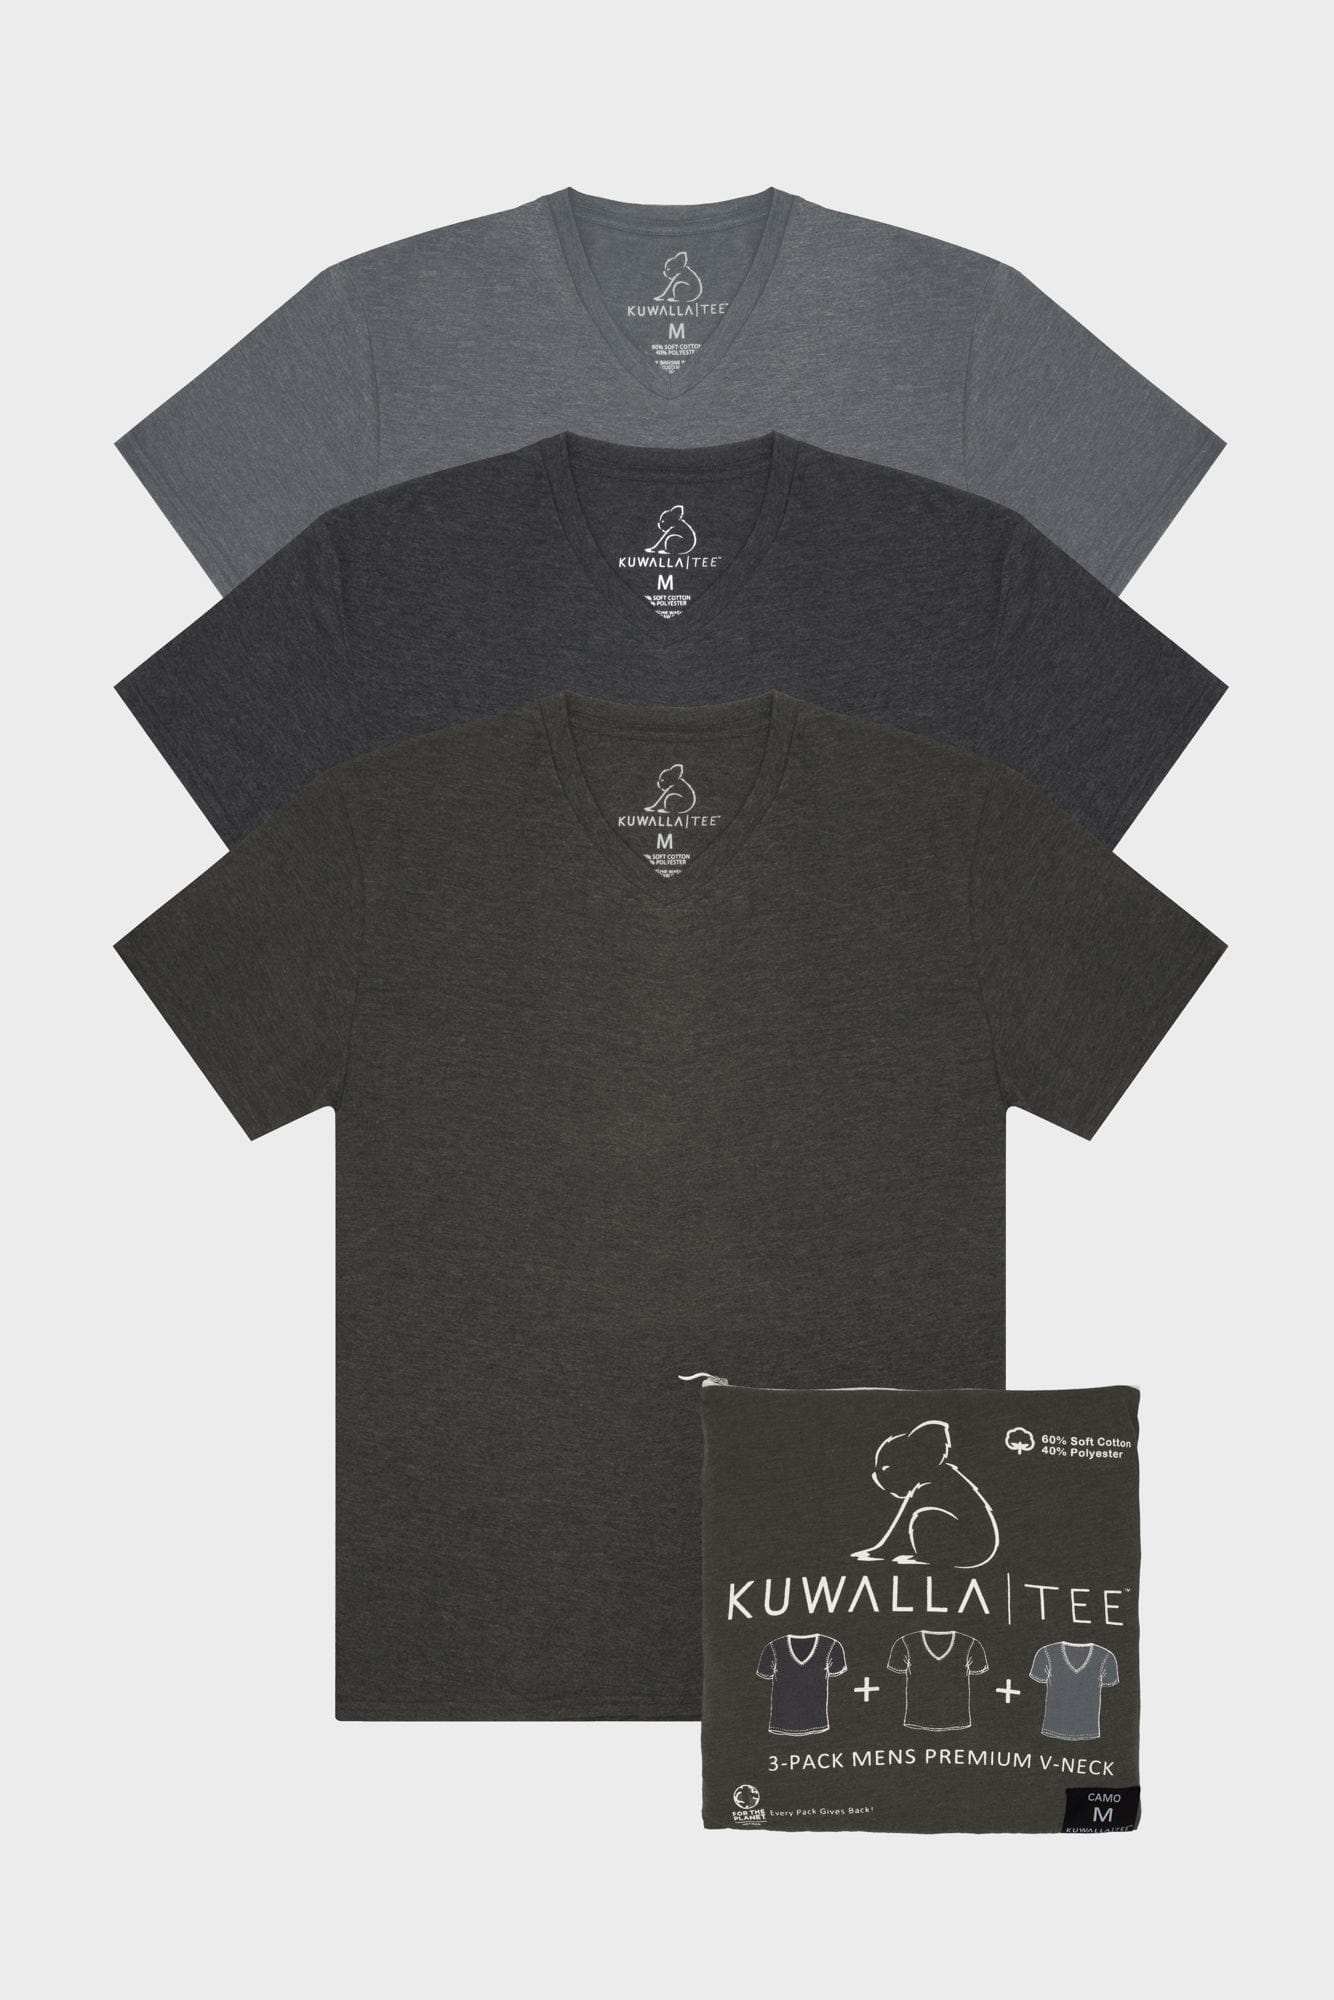 Kuwalla Men's T-Shirt KUL-CT1851 - Schreter's Clothing Store